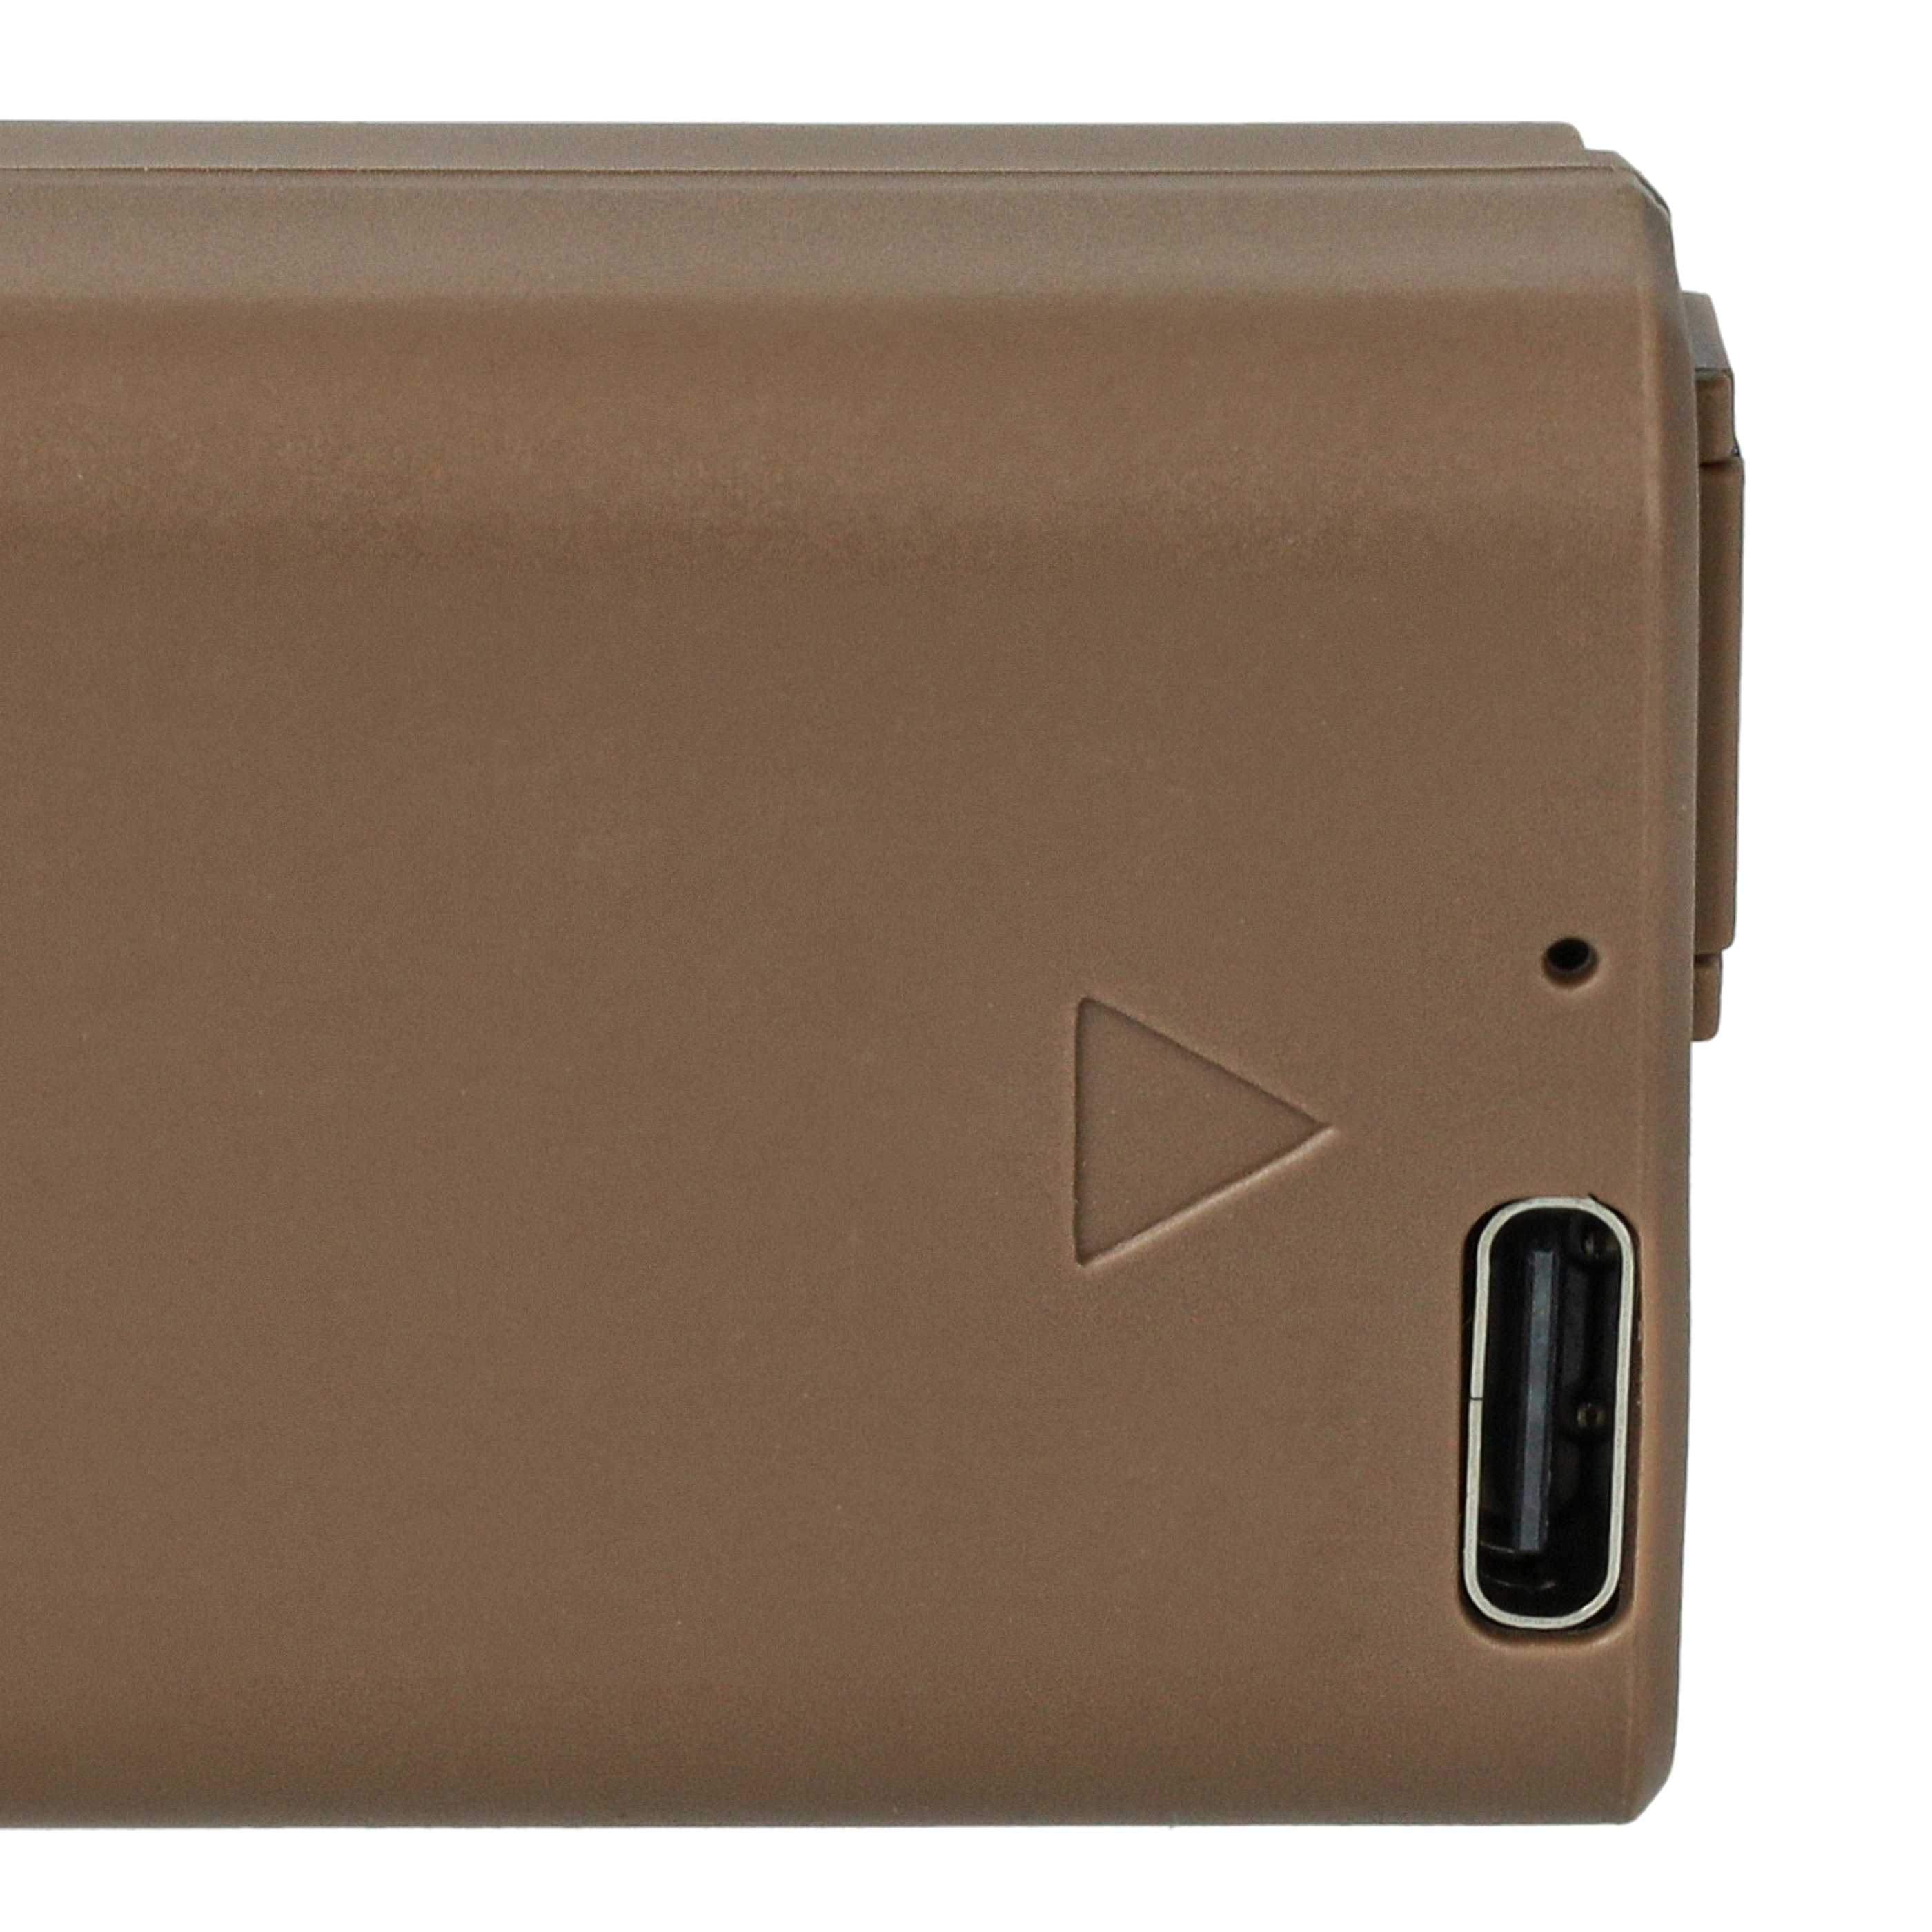 Kamera-Akku als Ersatz für Sony NP-FW50 - 900mAh 7,4V Li-Ion mit Infochip, mit USB-C Buchse